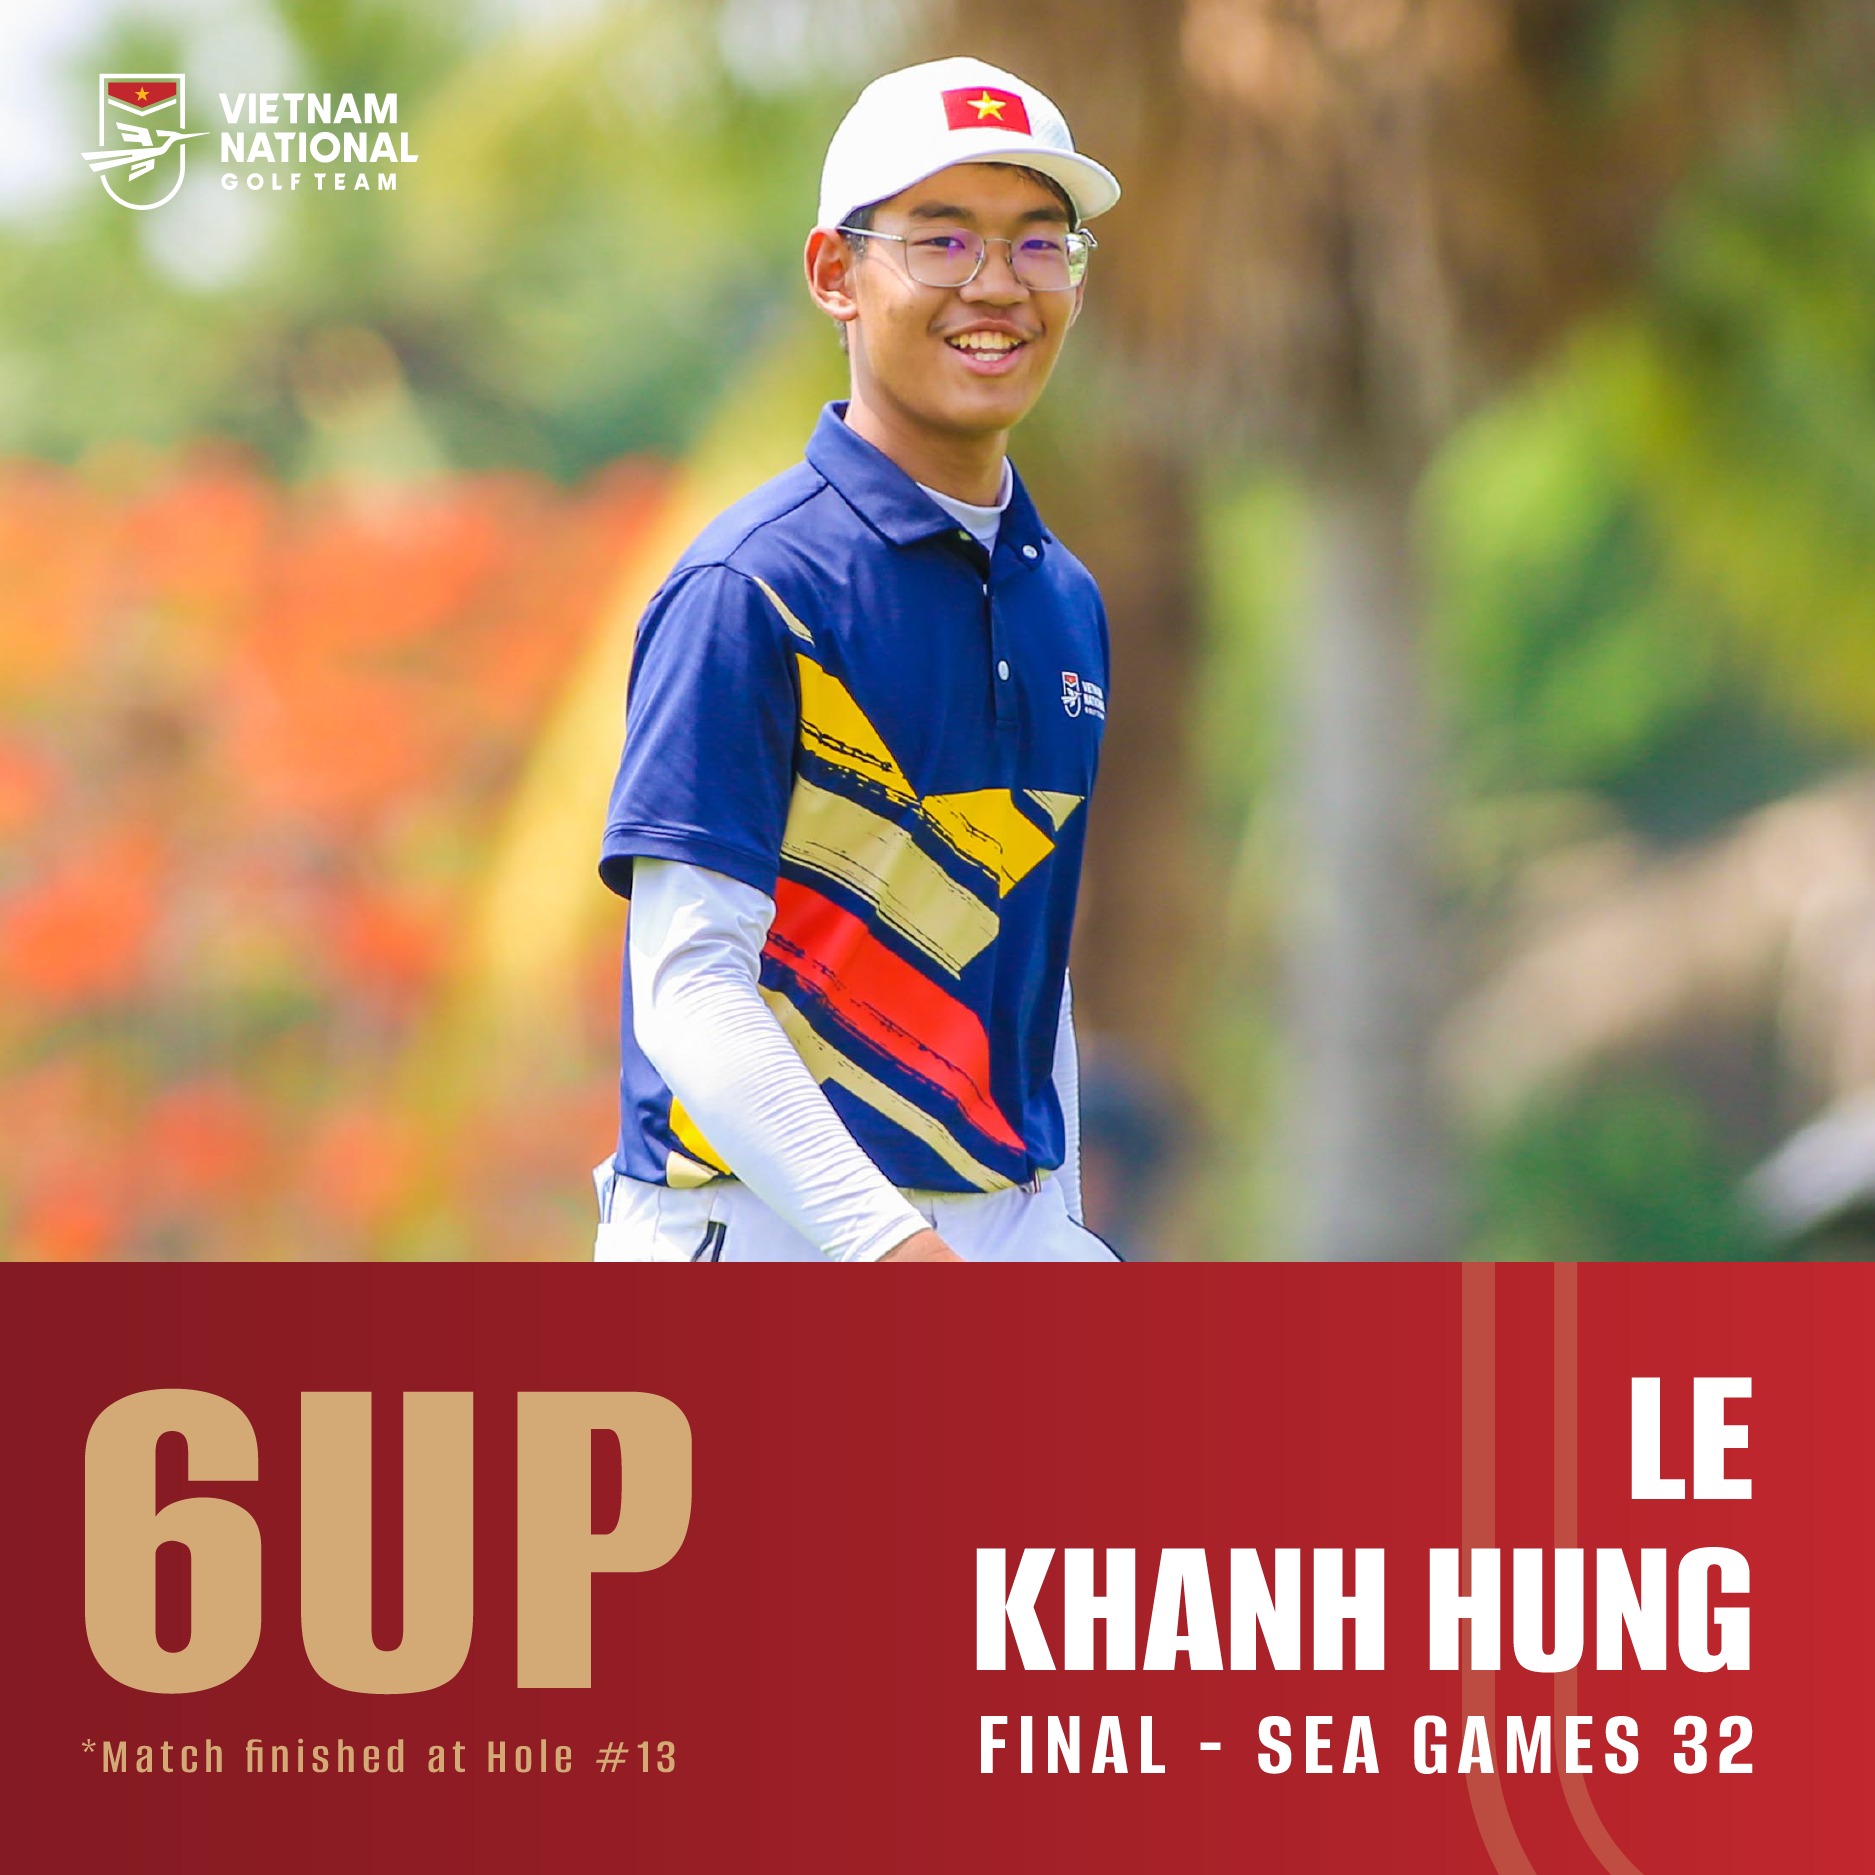 Các tài năng trẻ của golf Việt Nam tiếp tục mang về tấm HCB đồng đội lịch sử - Ảnh 5.